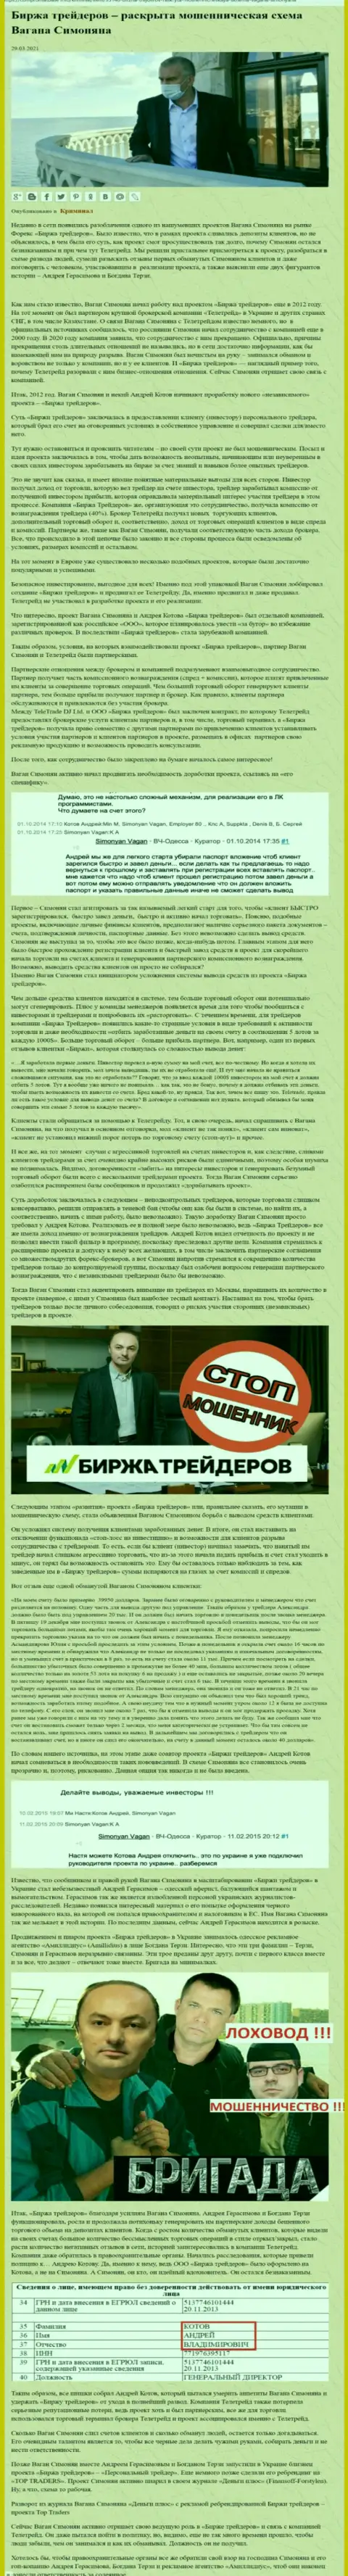 Рекламой фирмы Биржа Трейдеров, связанной с обманщиками Теле Трейд, также занимался Терзи Богдан